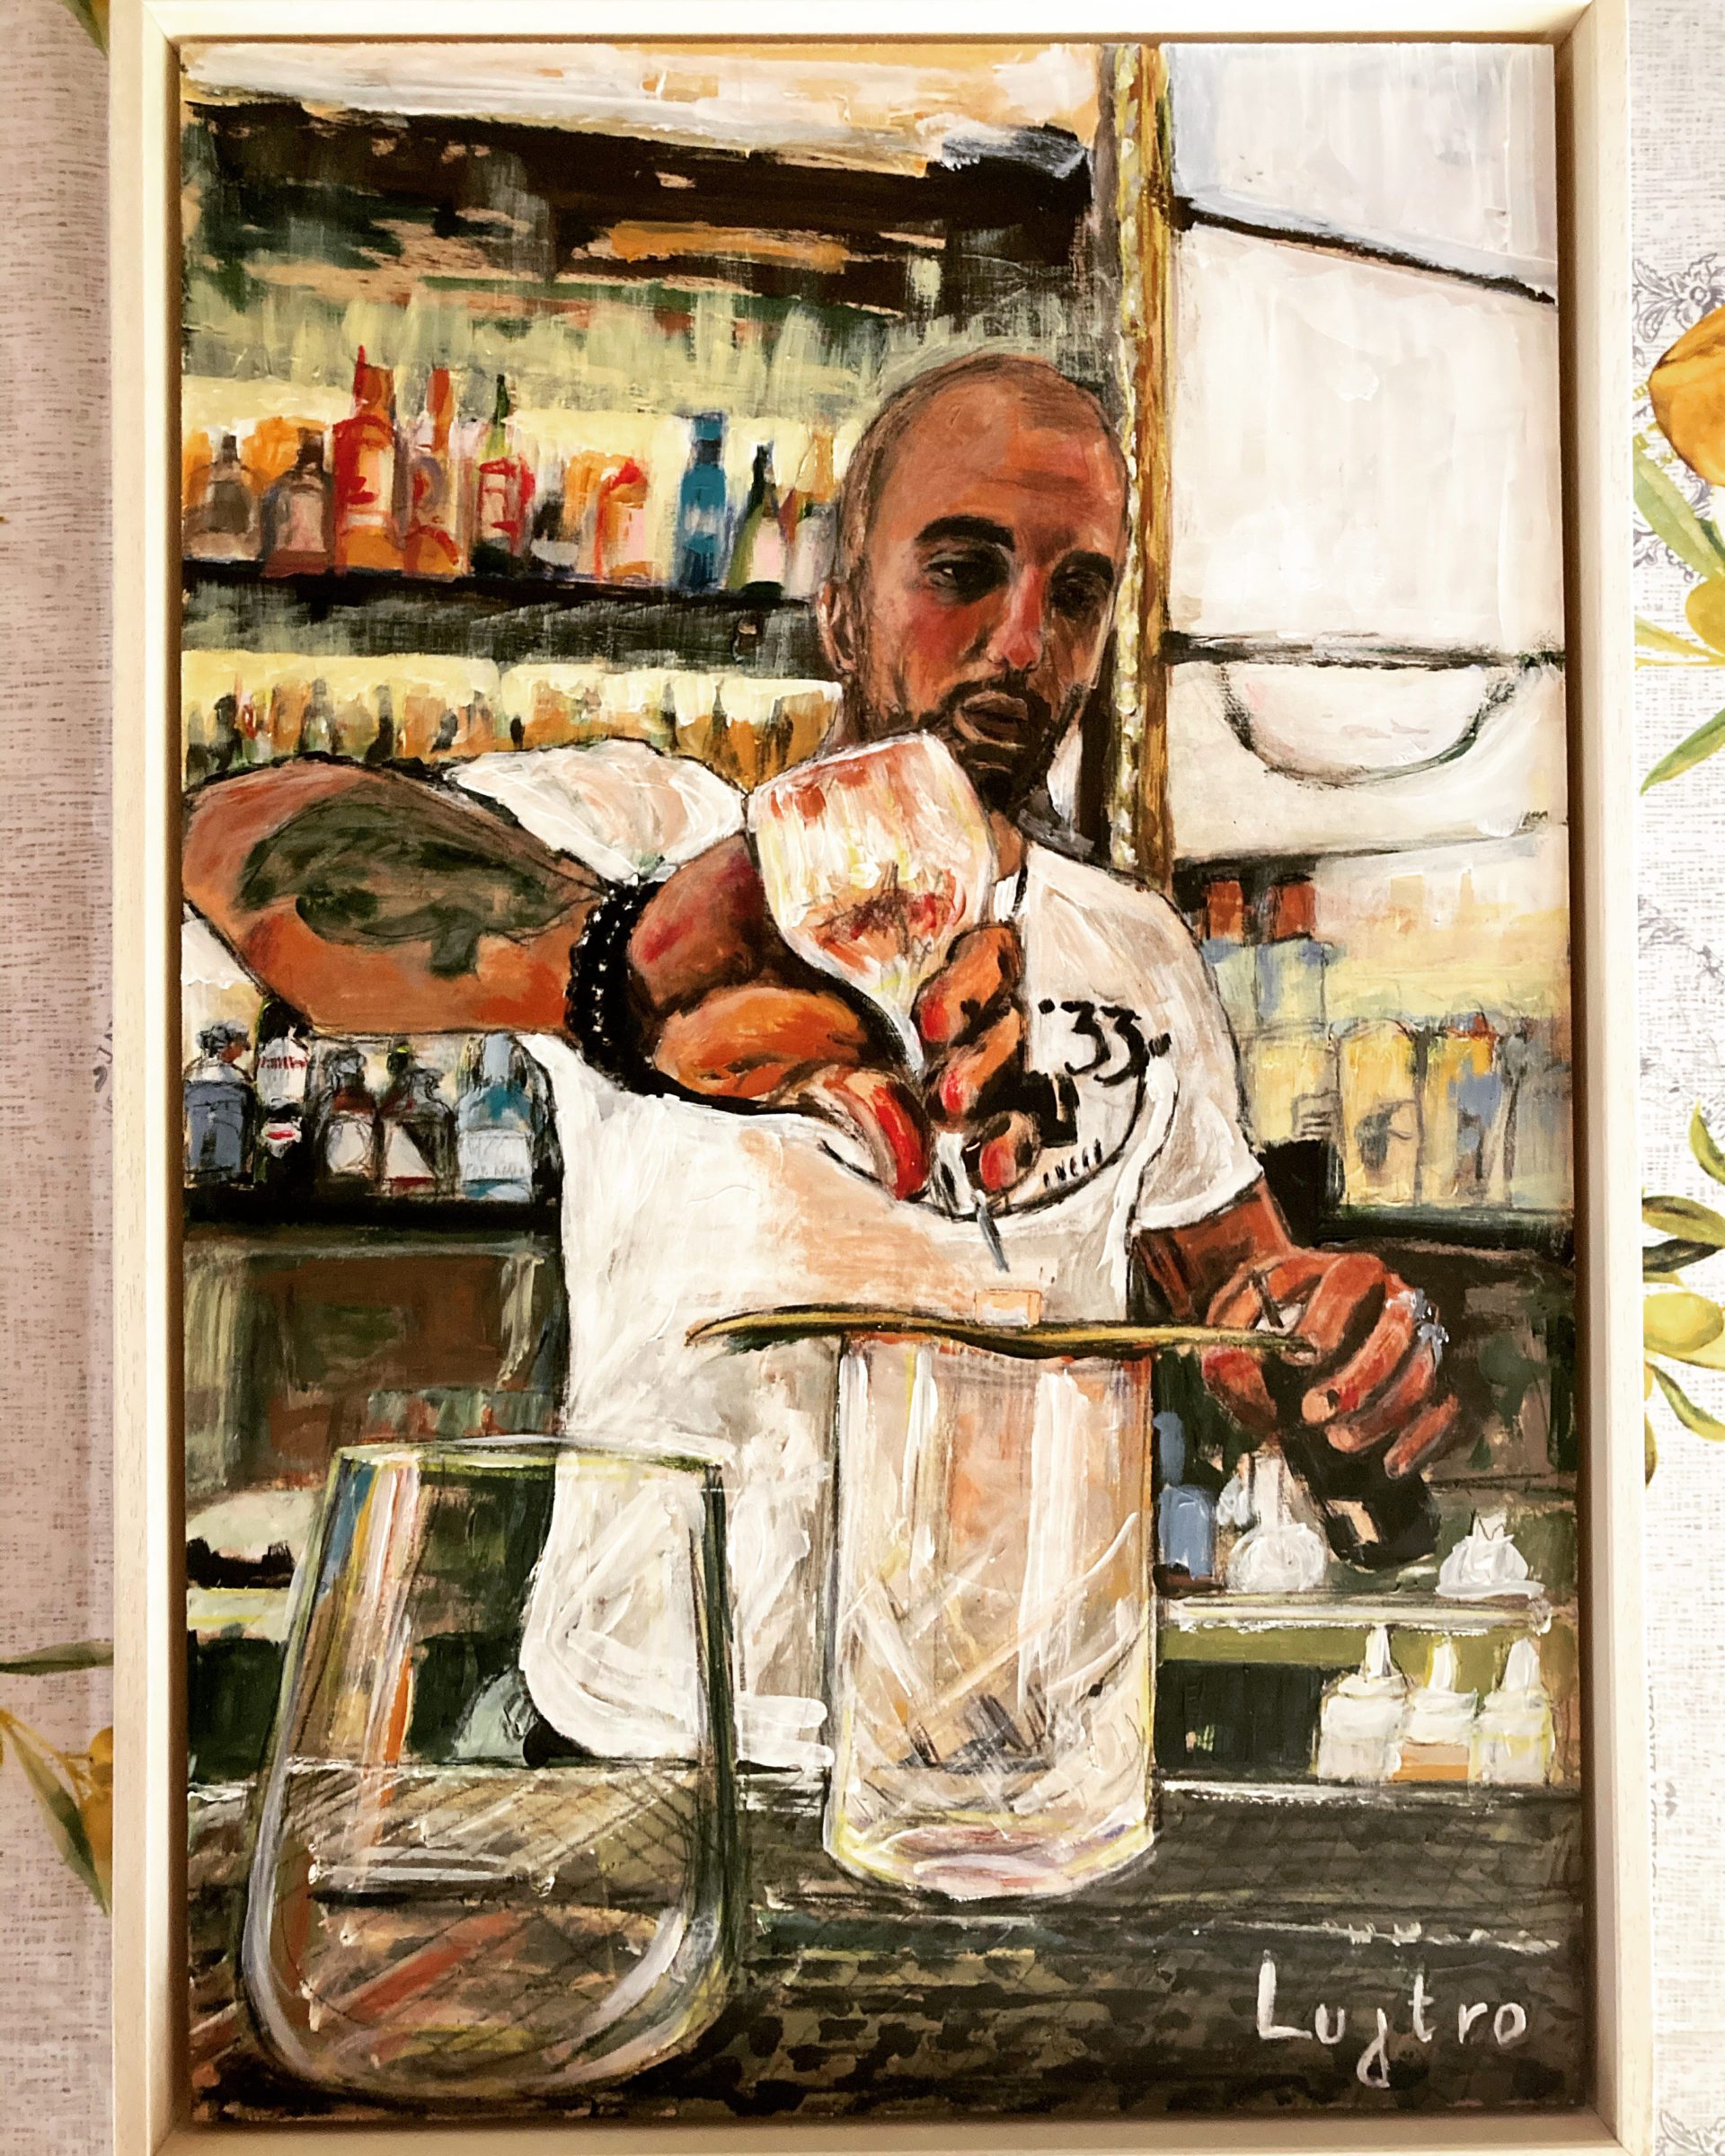 dipinto che ritrae un barman intento nella preparazione di un drink sour